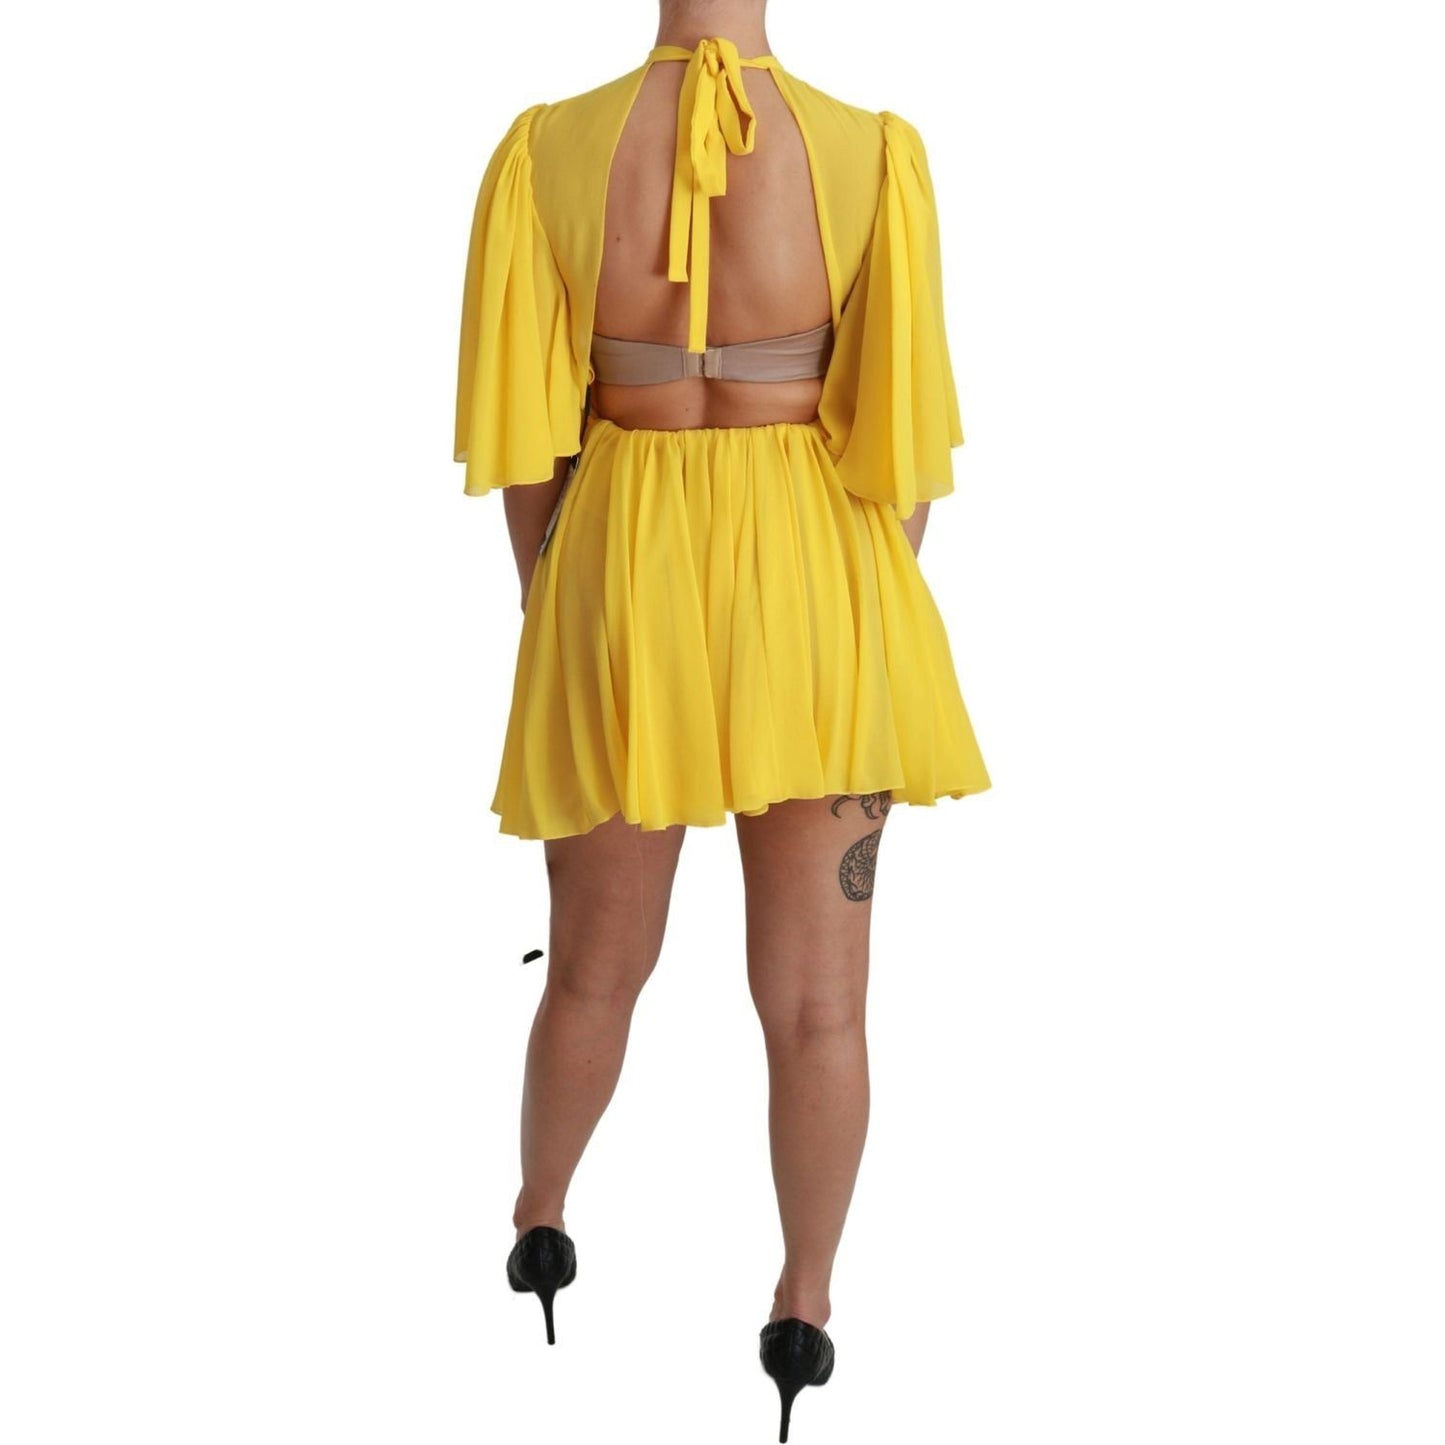 Dolce & Gabbana Silk Pleated A-line Mini Dress in Sunshine Yellow yellow-pleated-a-line-mini-100-silk-dress